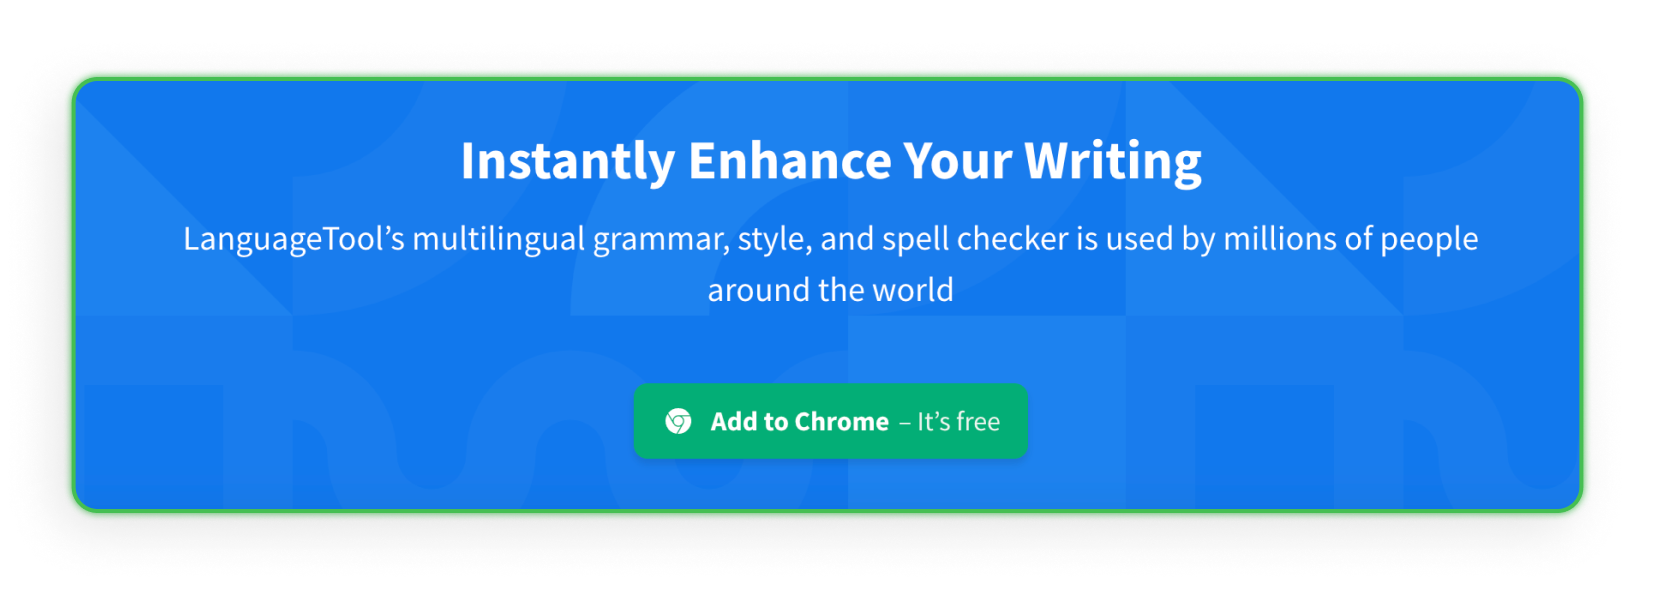 Extensión de Chrome para editores - Language Tool